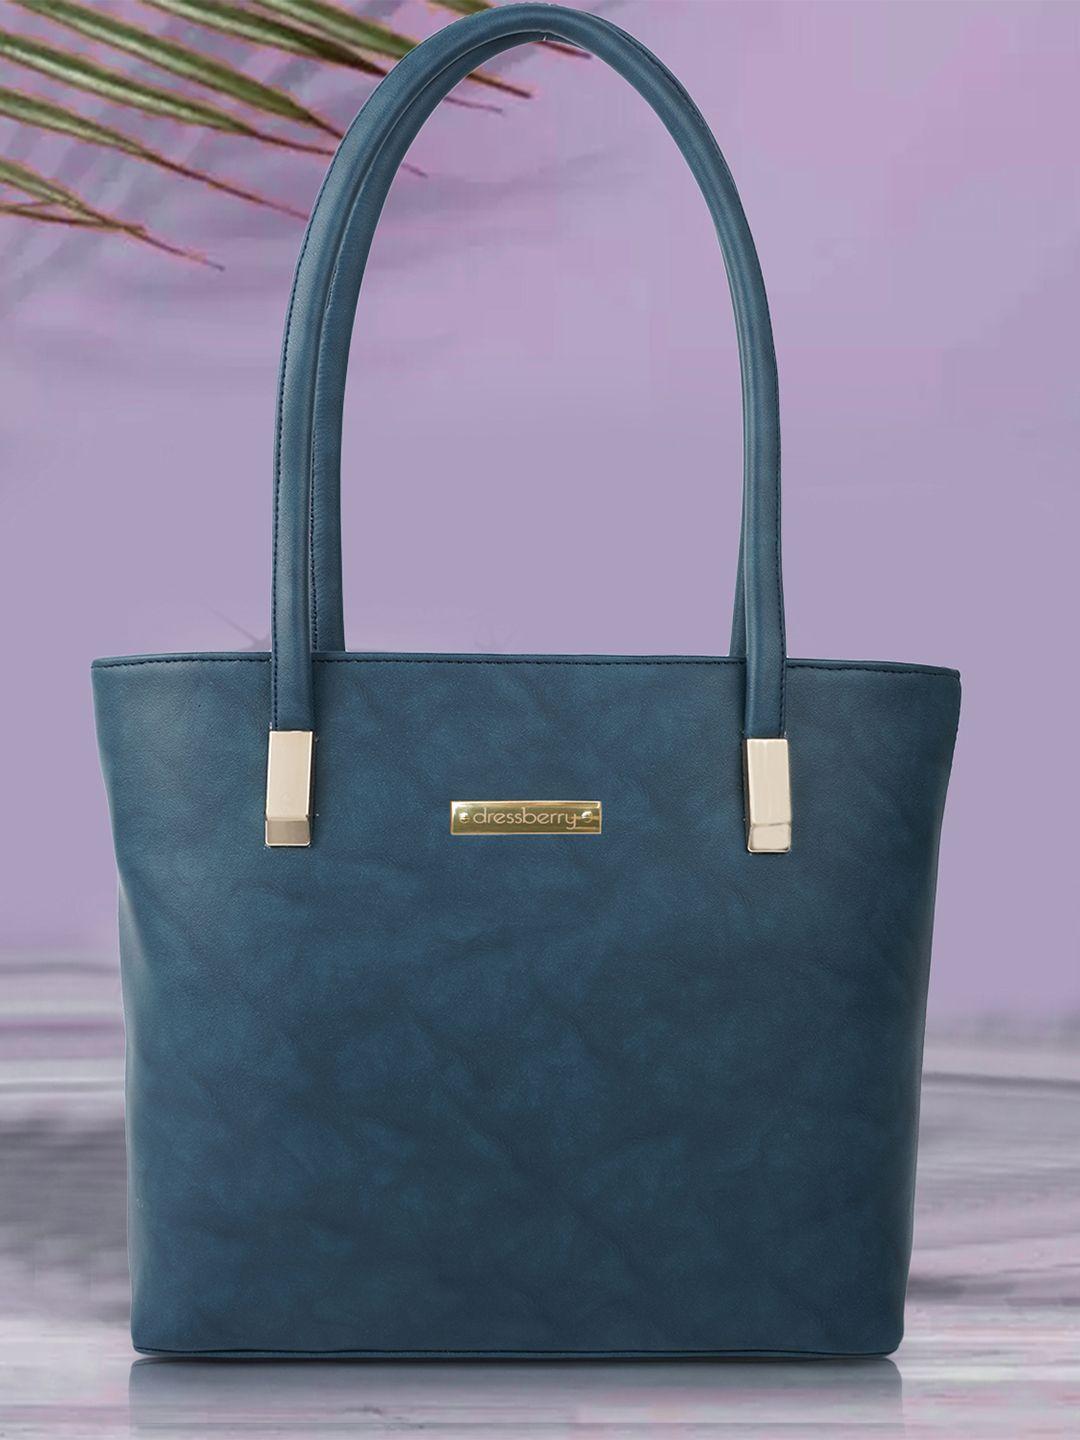 dressberry teal blue structured handheld bag